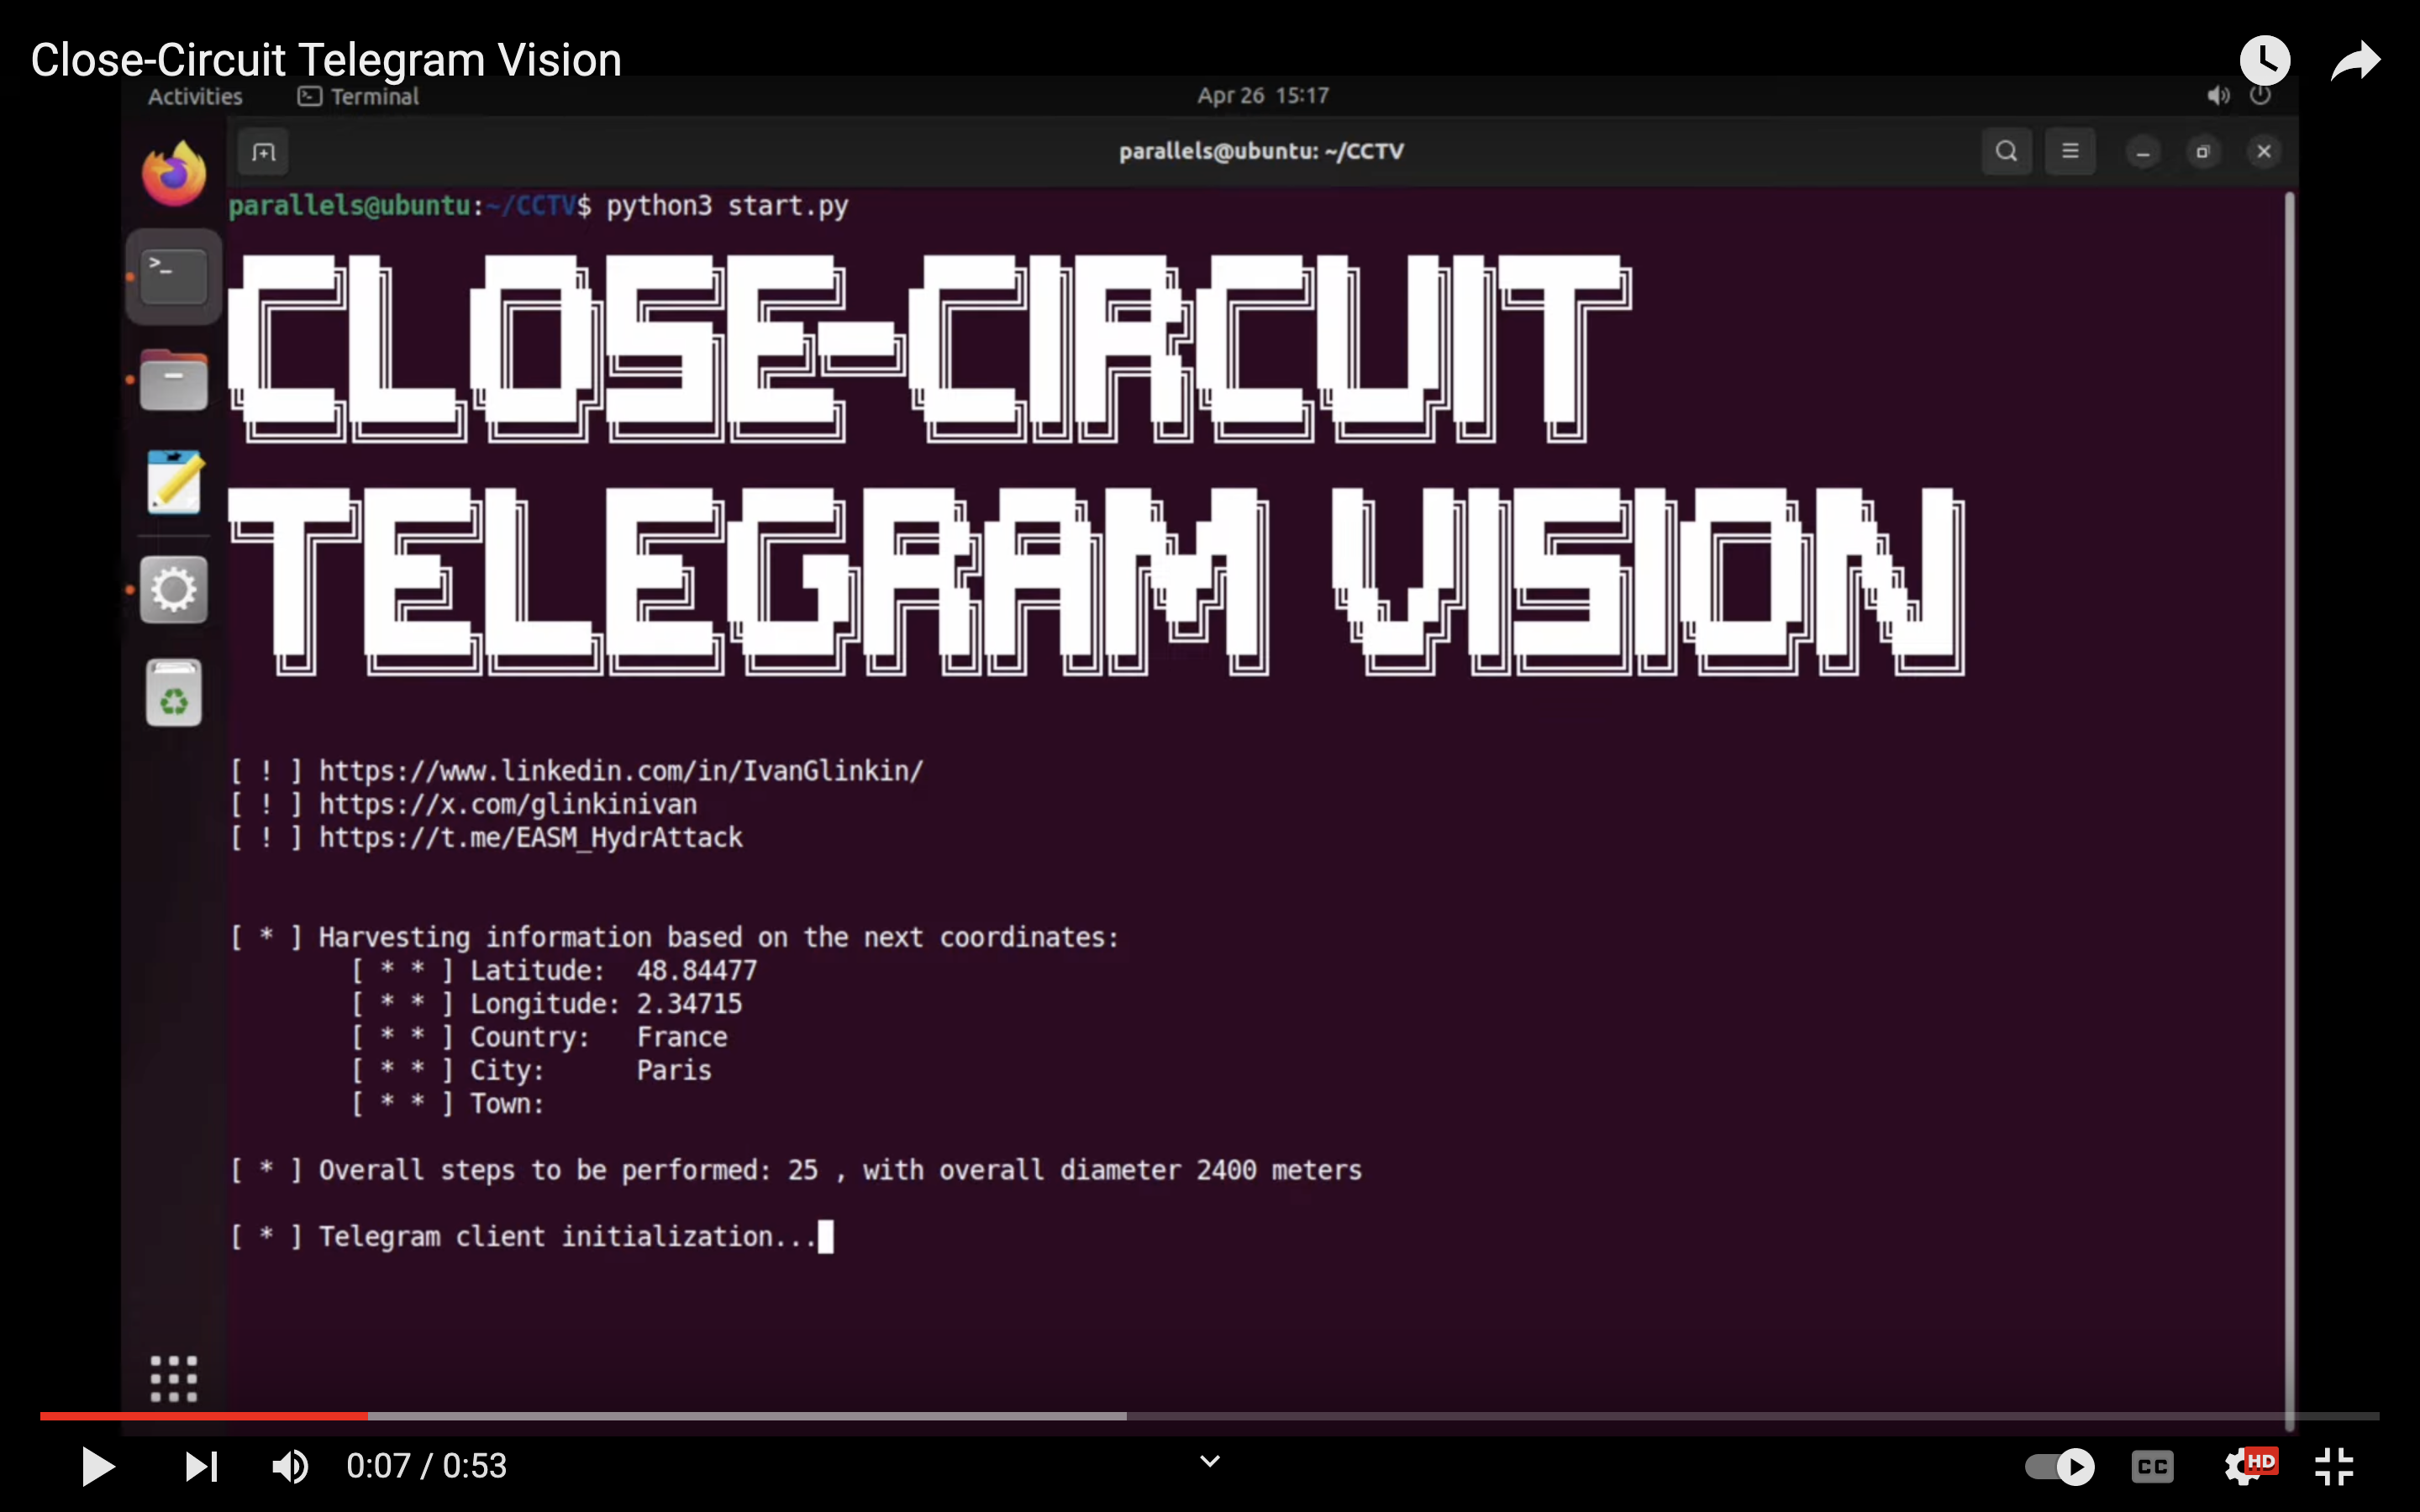 Close-Curcuit Telegram Vision PoC